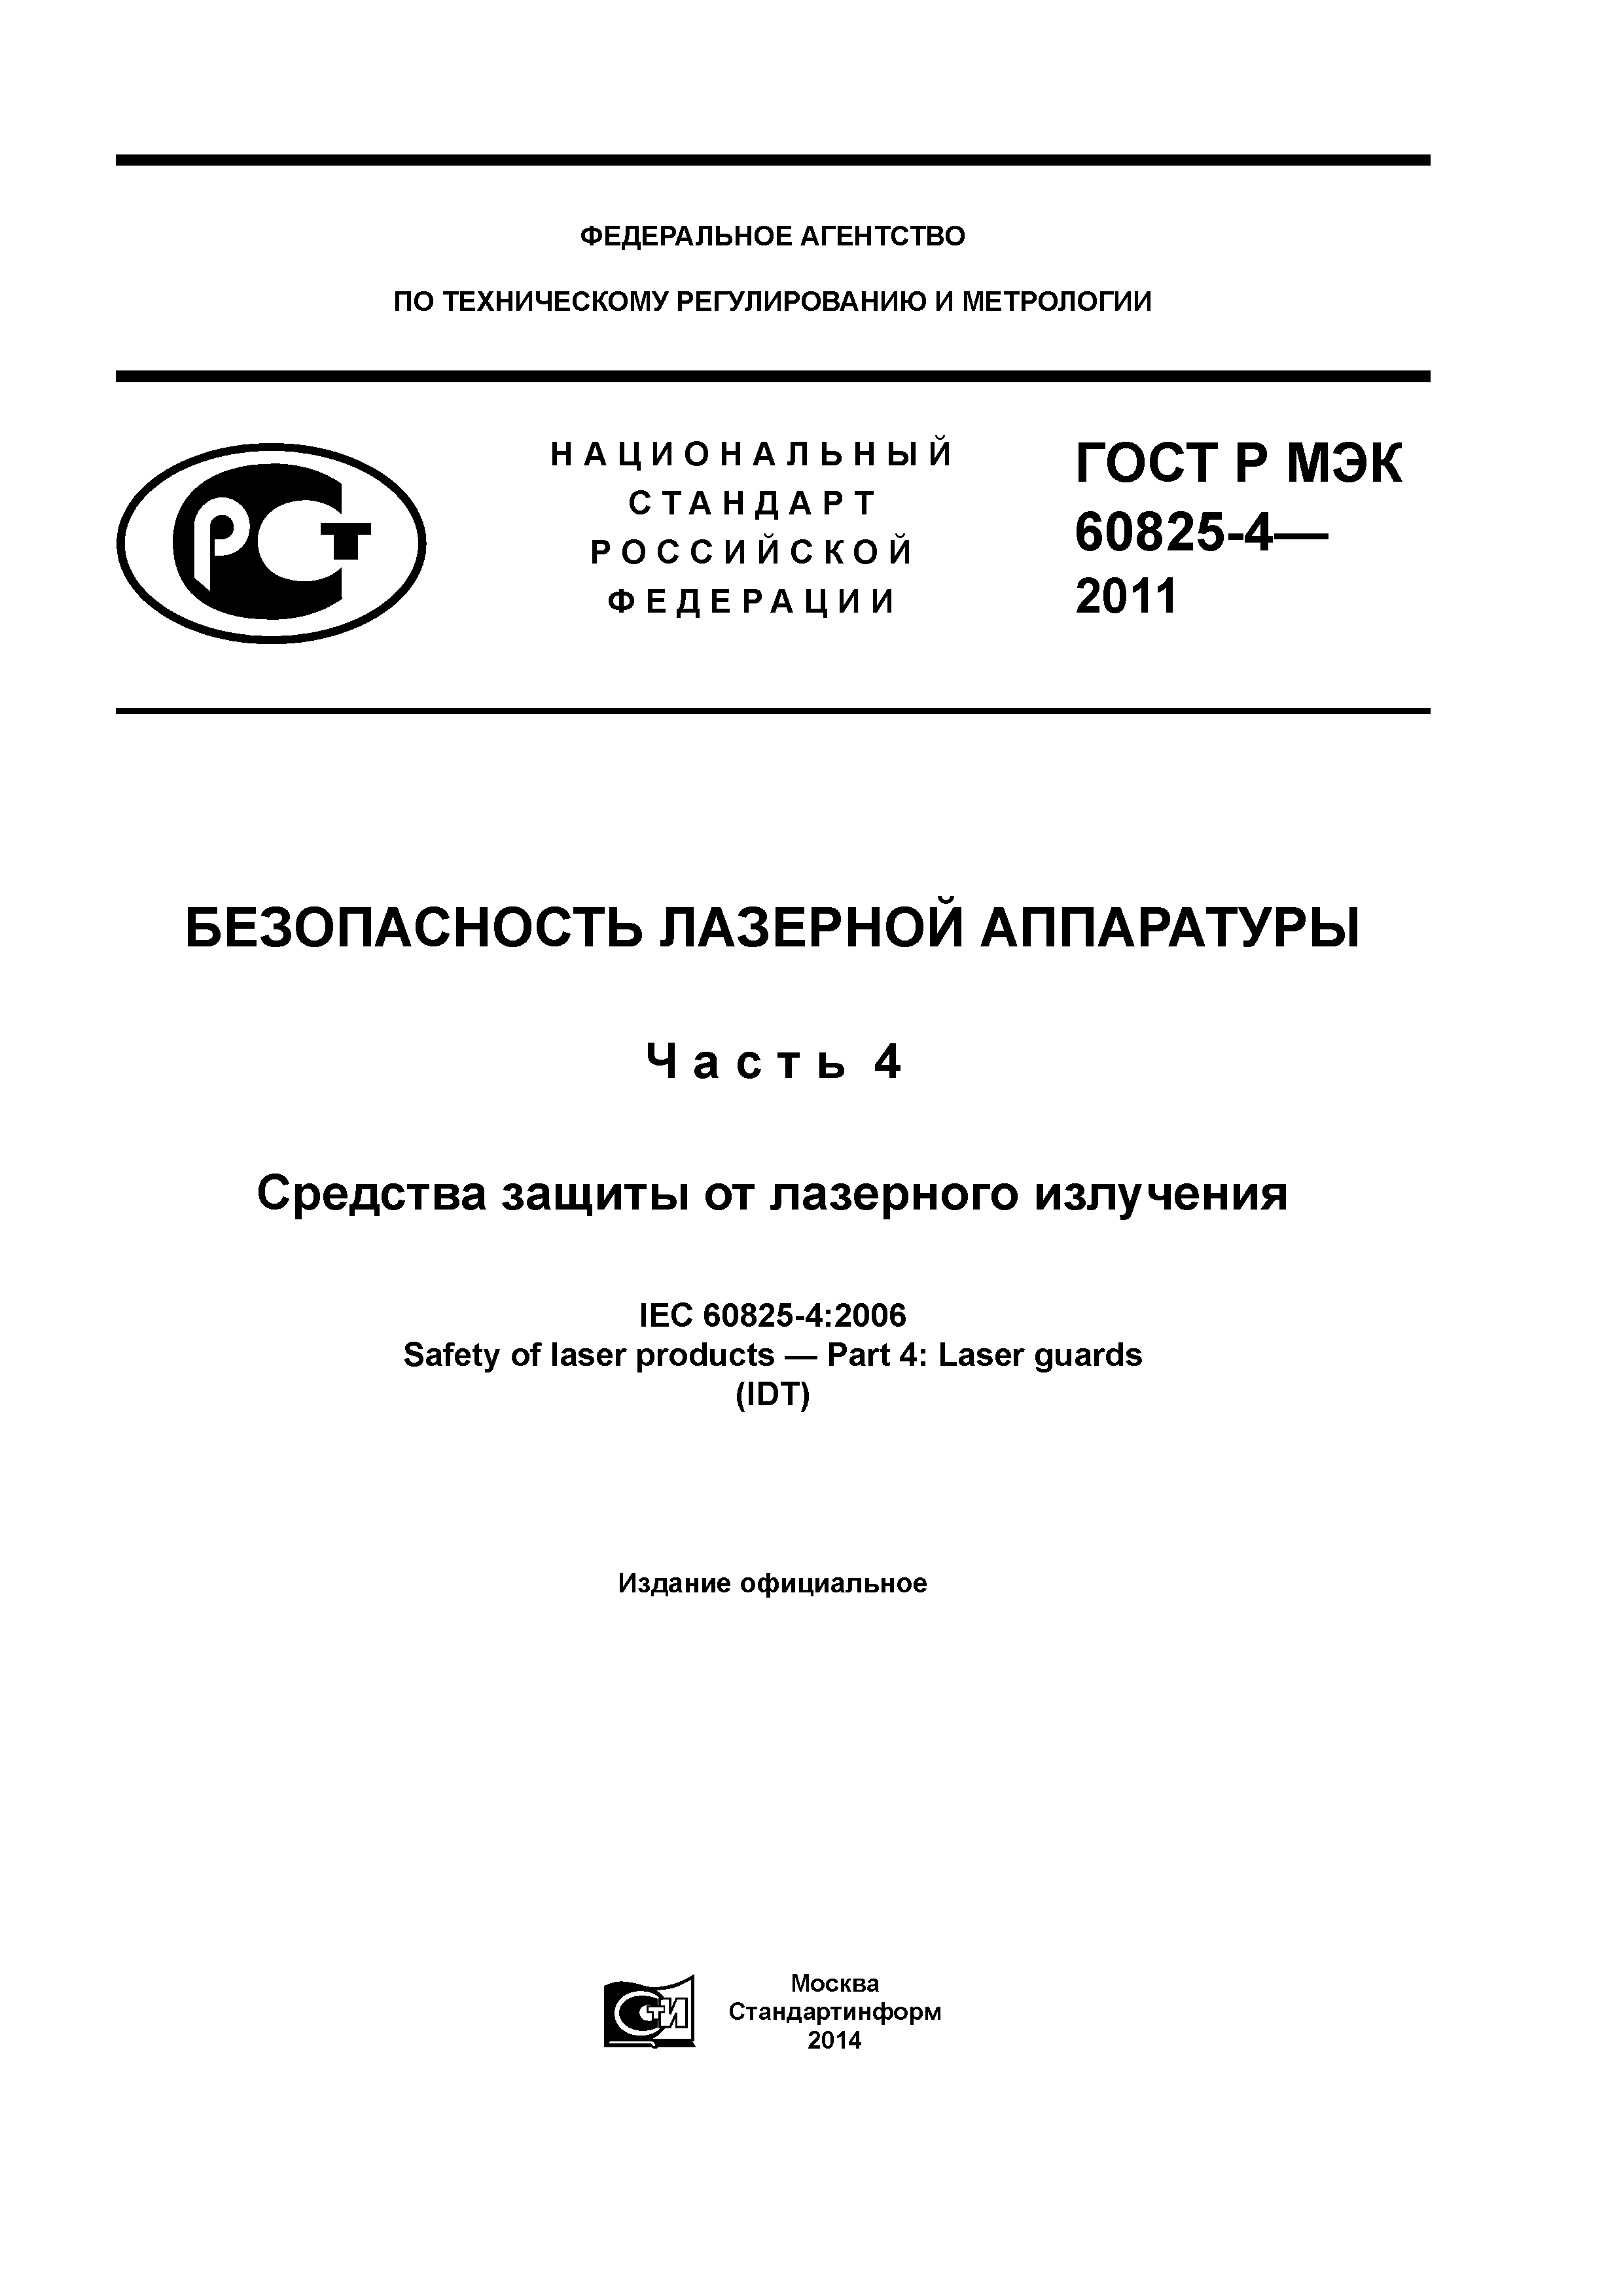 ГОСТ Р МЭК 60825-4-2011